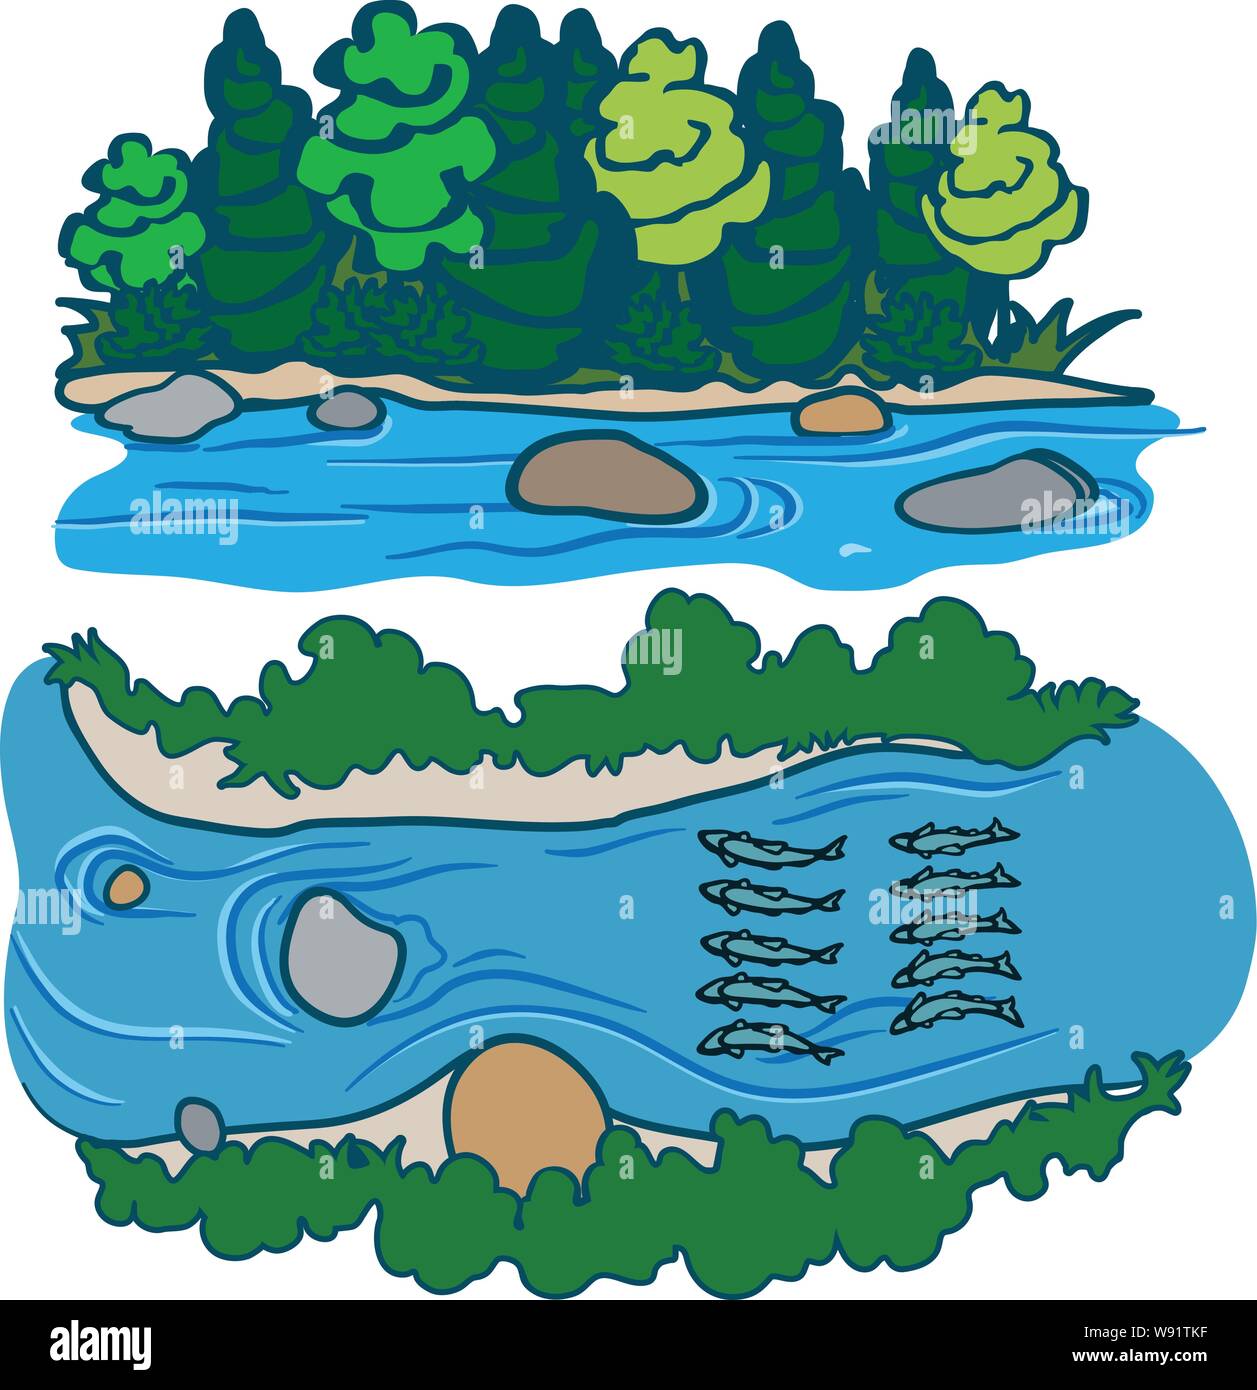 Rivière bordée d'arbustes arbres enroché graphique avec elle dans la rivière avec les conduites d'écoulement d'une séquence d'animation de poissons aussi Illustration de Vecteur